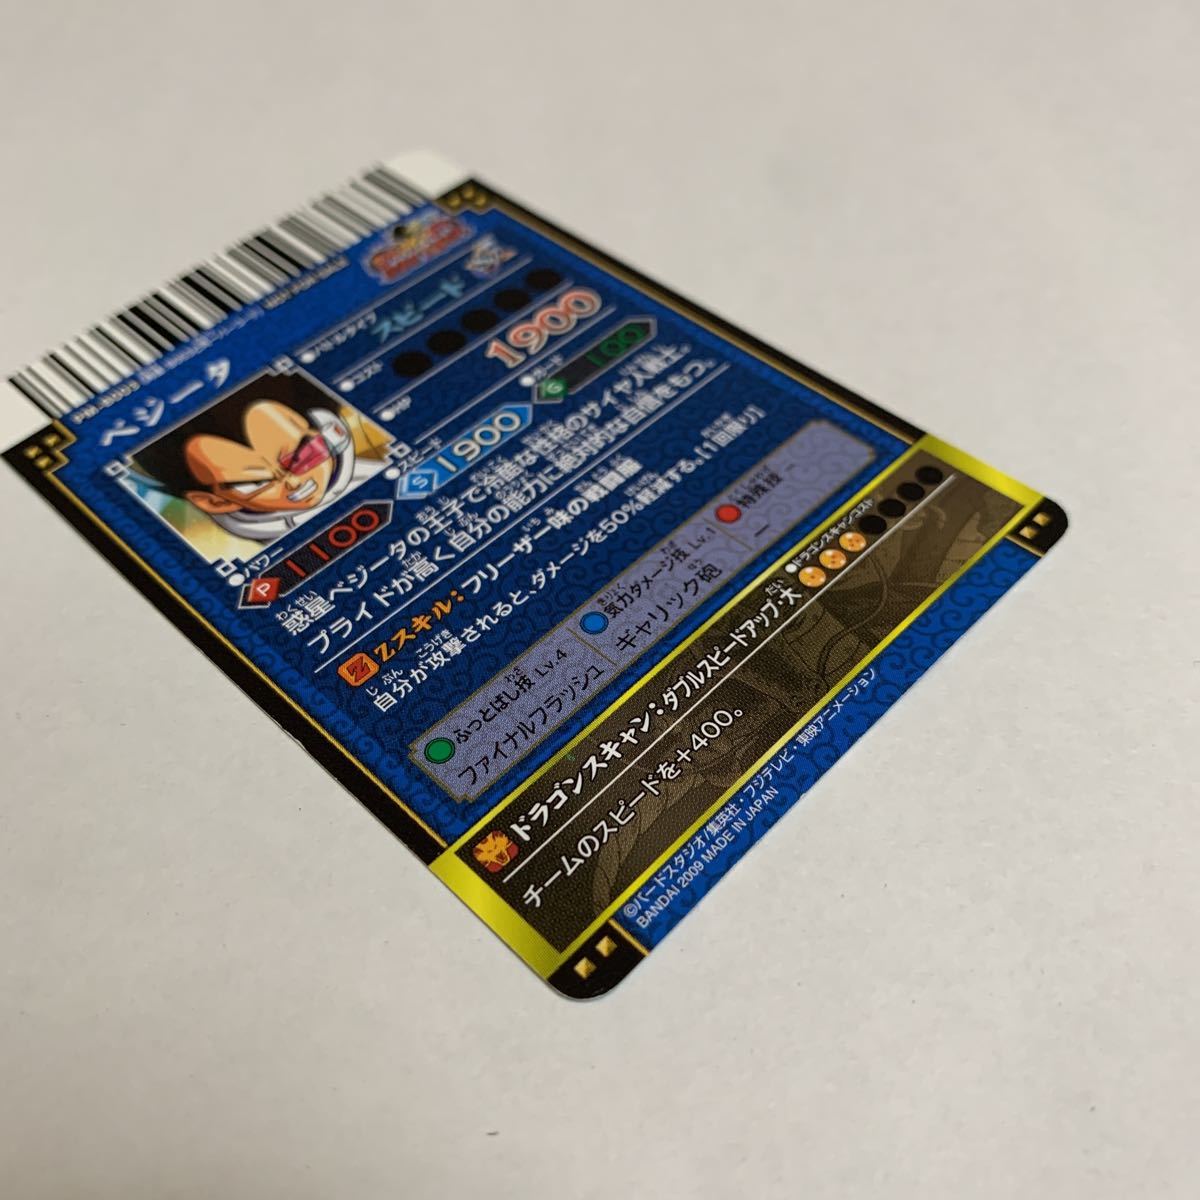  Dragon Ball Dragon Battlers DRAGONBALL карта коллекционные карточки Vegeta PM-B003 McDonald's 2009 Bandai не продается вскрыть товар прекрасный товар бесплатная доставка 